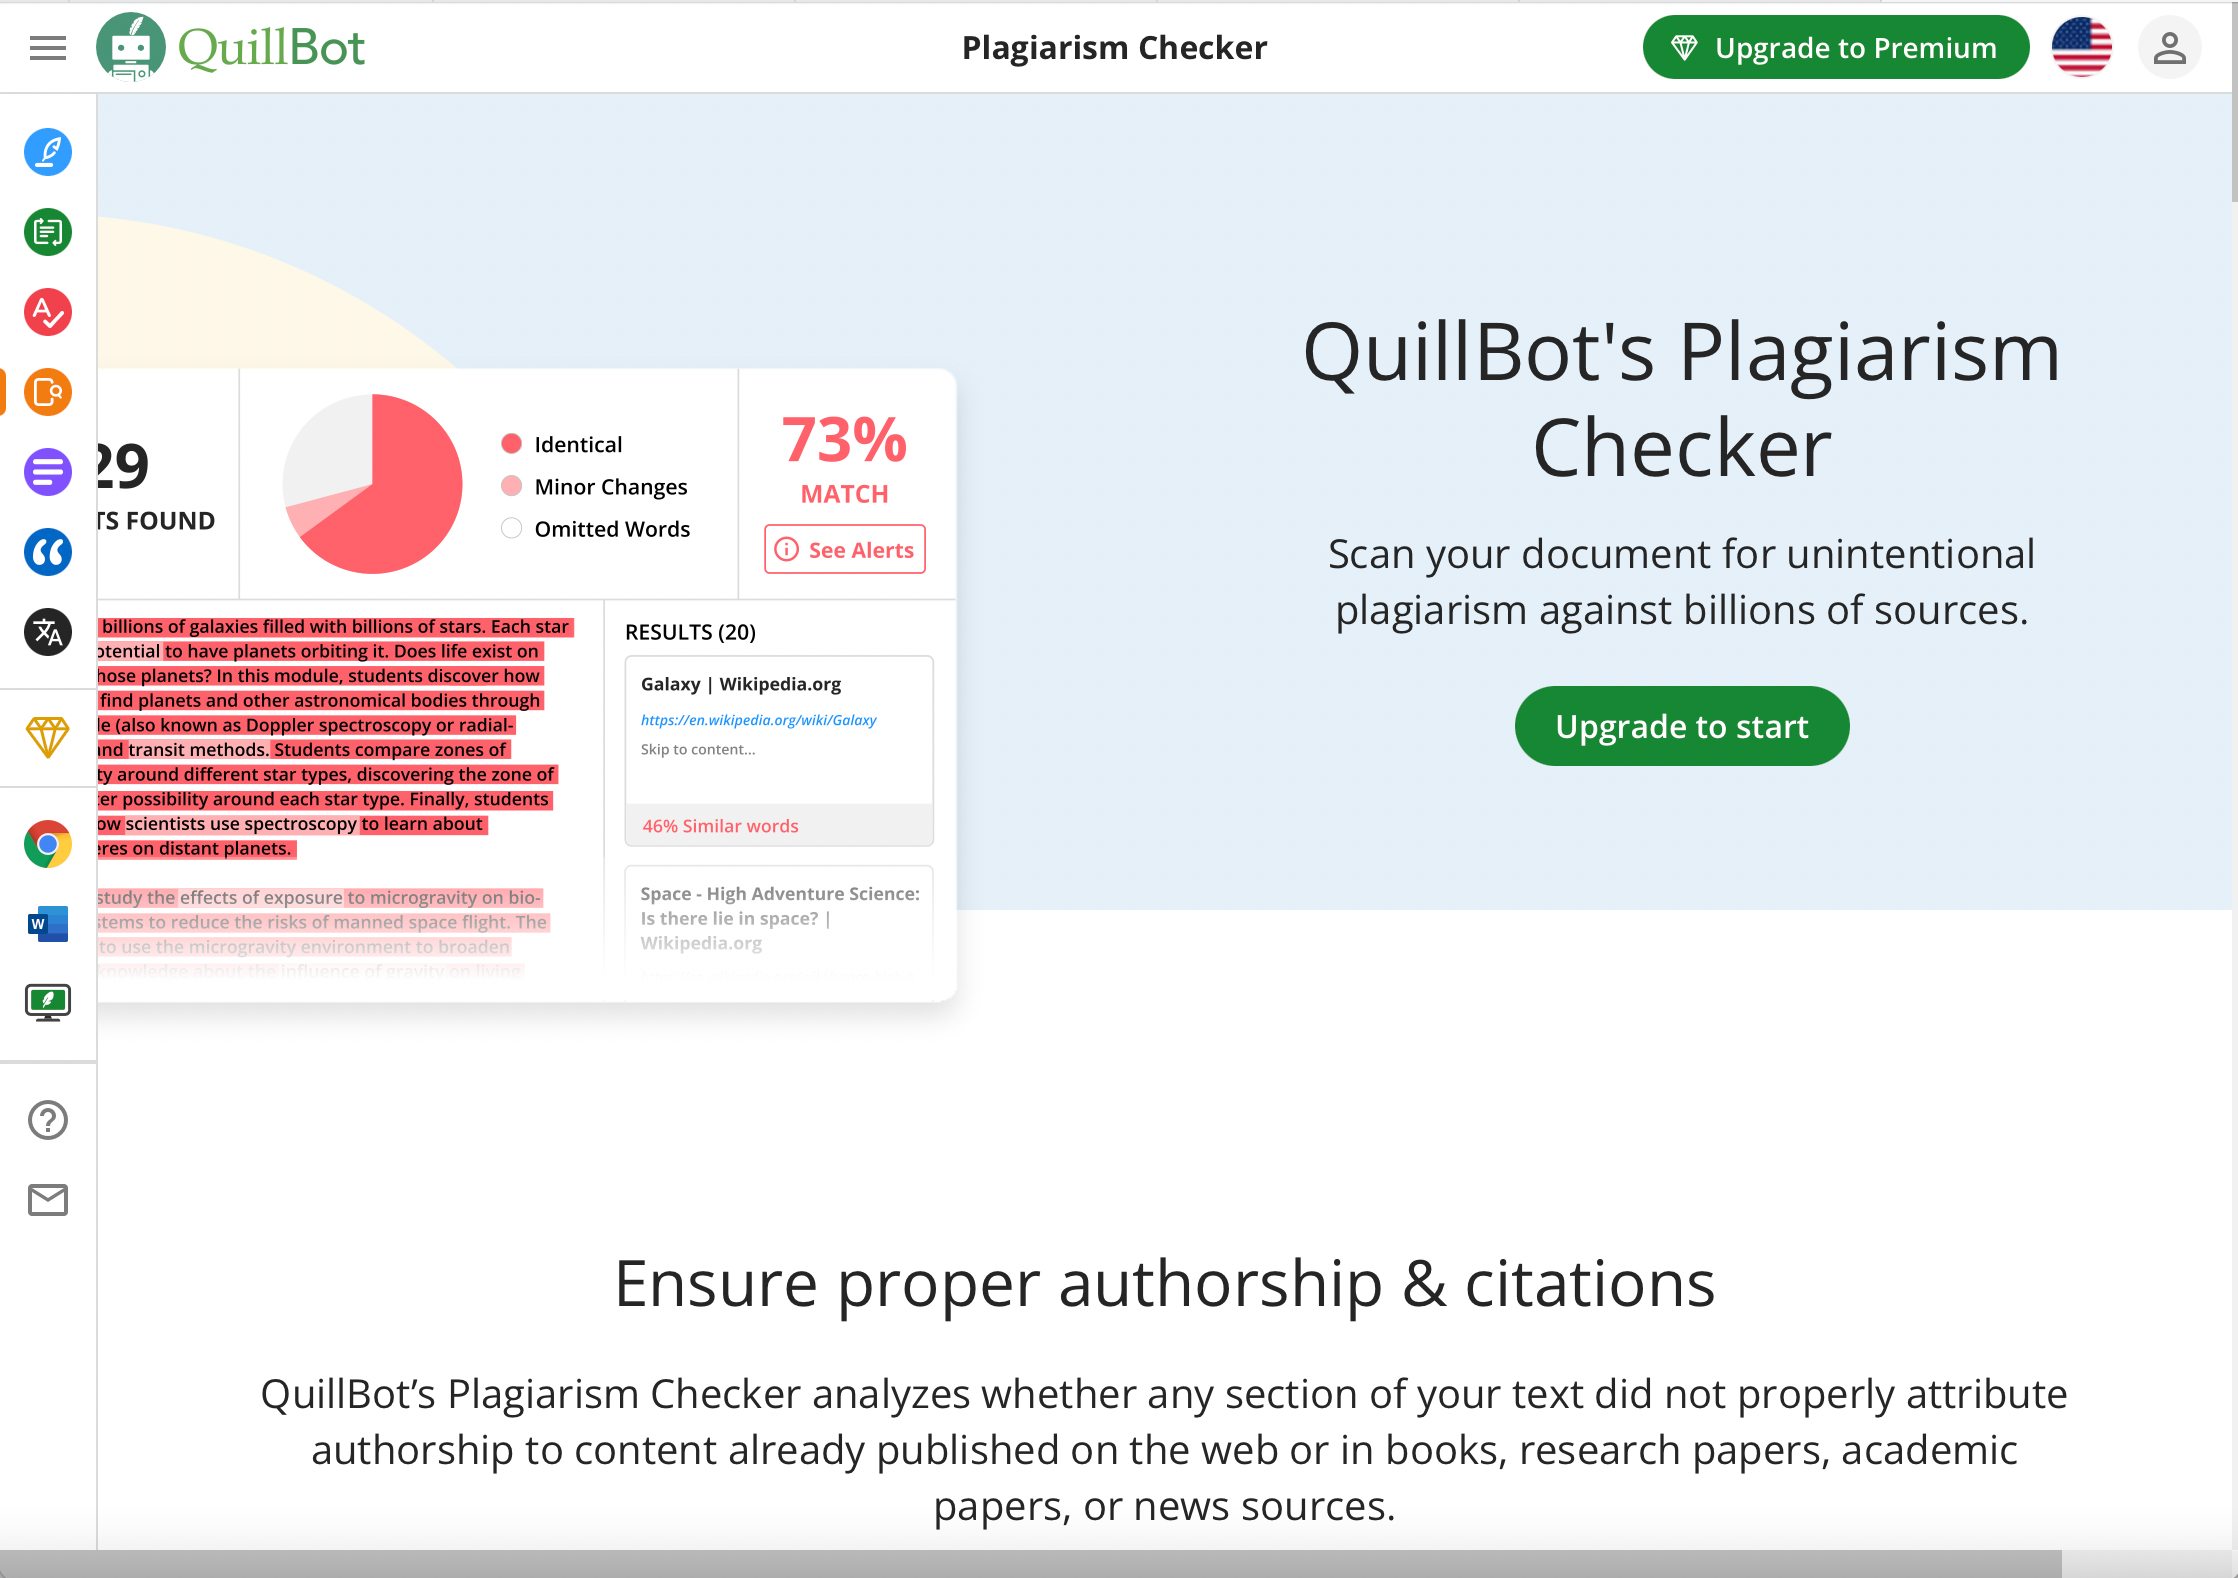 Quillbot Plagiarism Checker